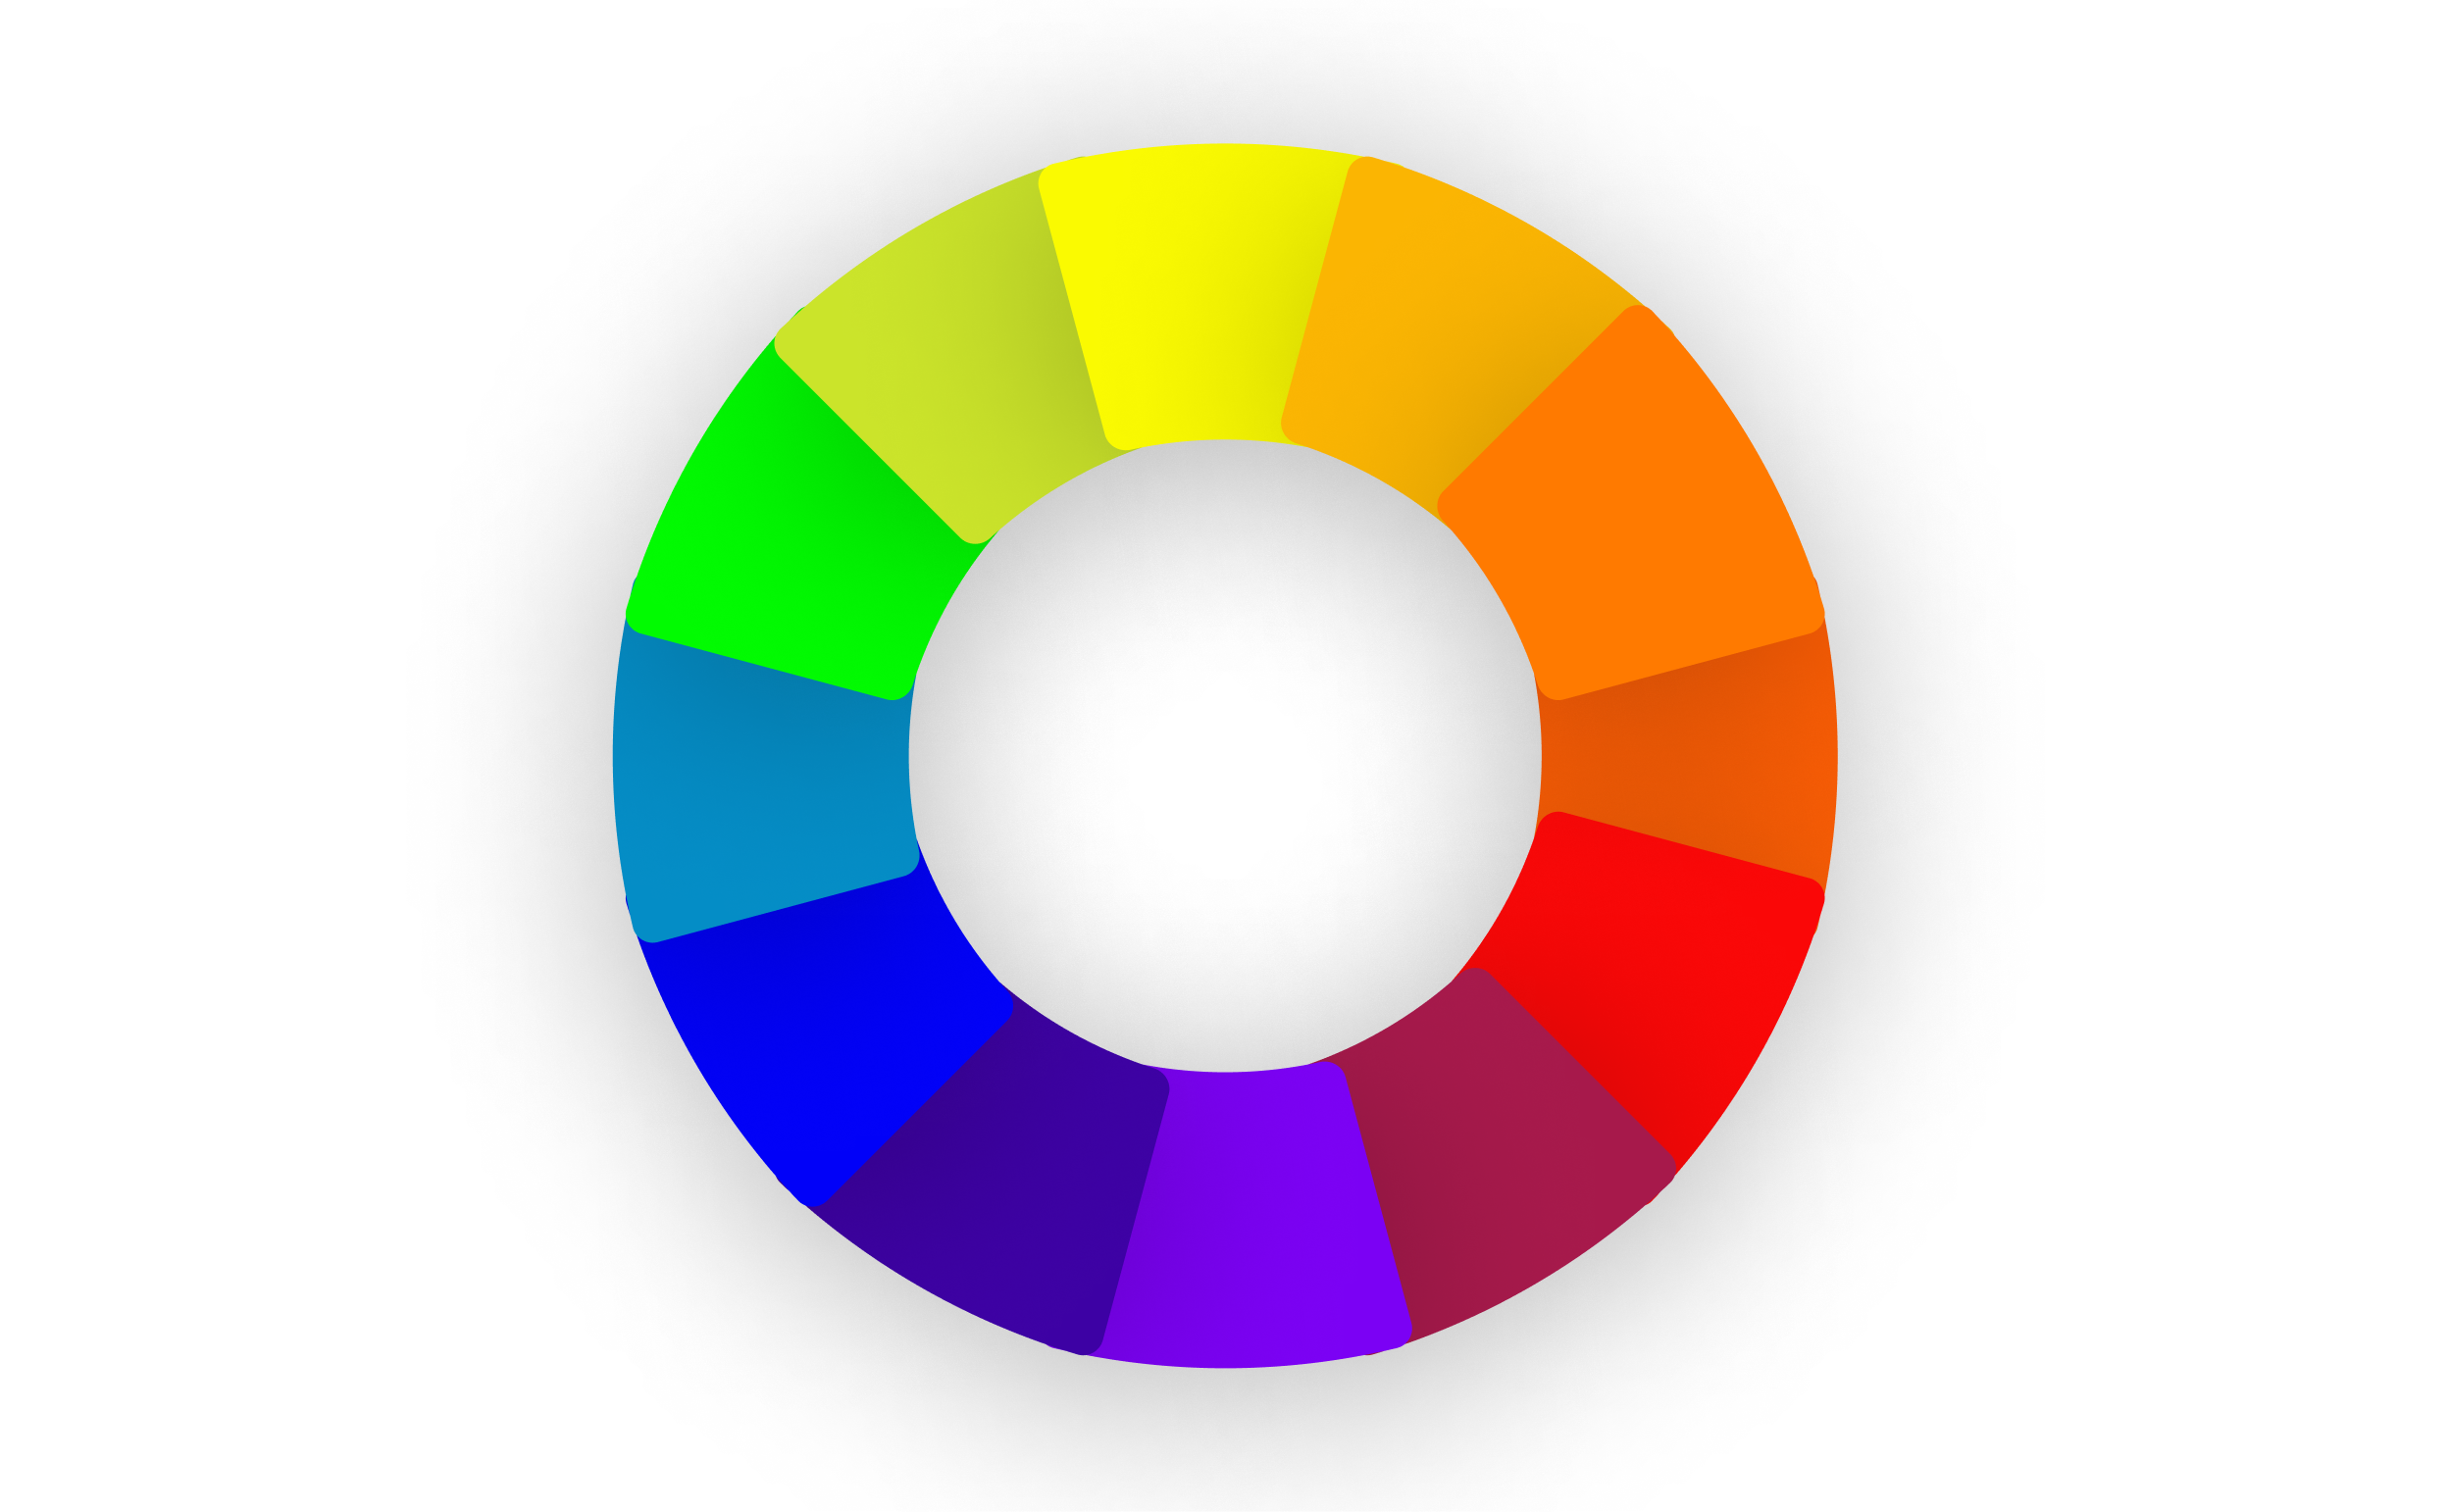 color wheel paint chart